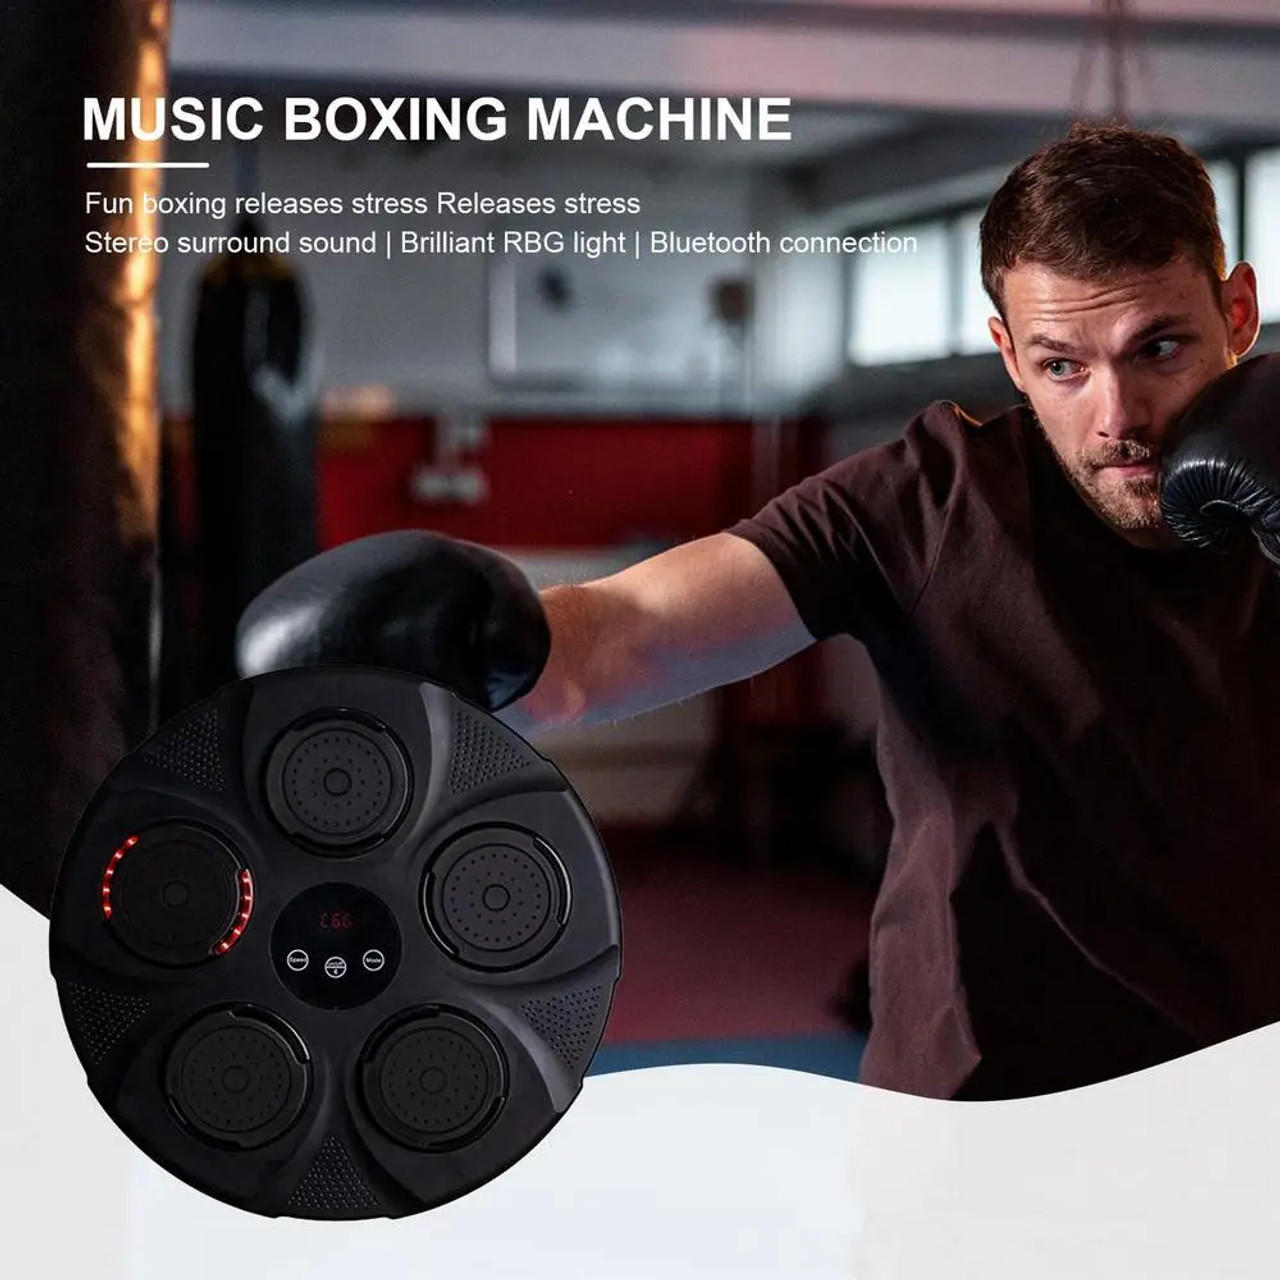 Music Boxing Machine - Brilliant Promos - Be Brilliant!